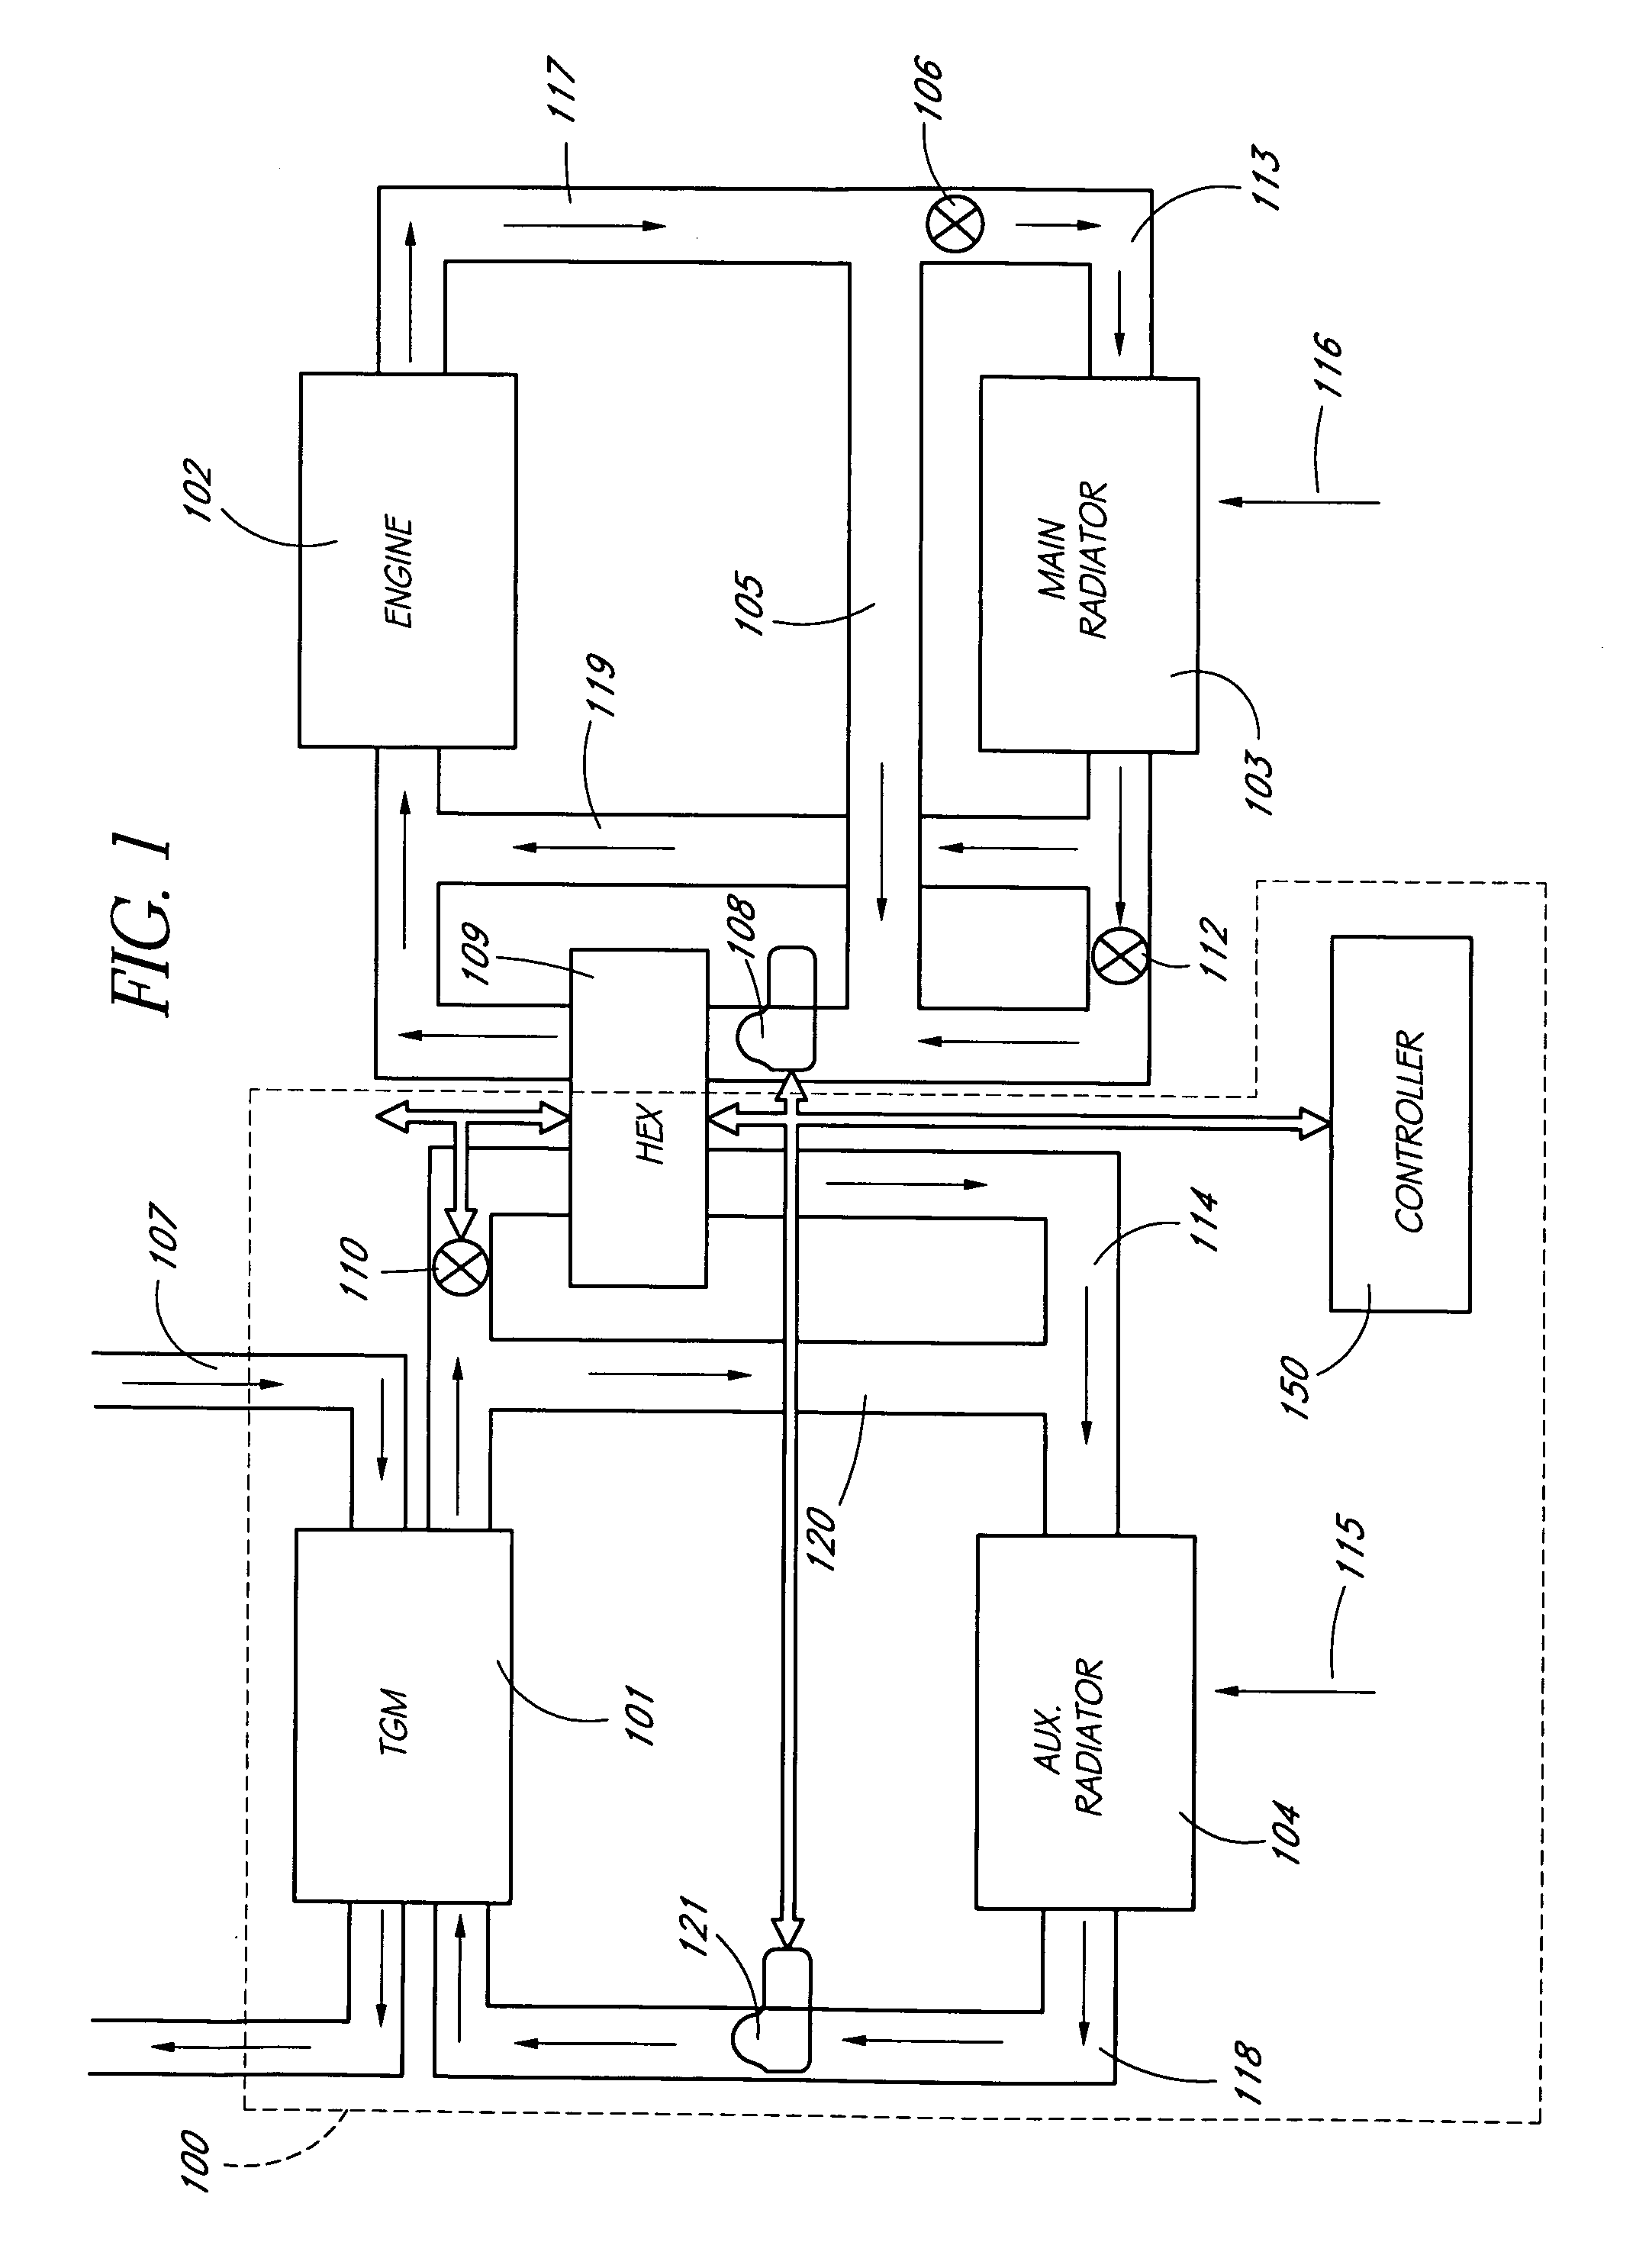 Thermoelectric power generator with intermediate loop